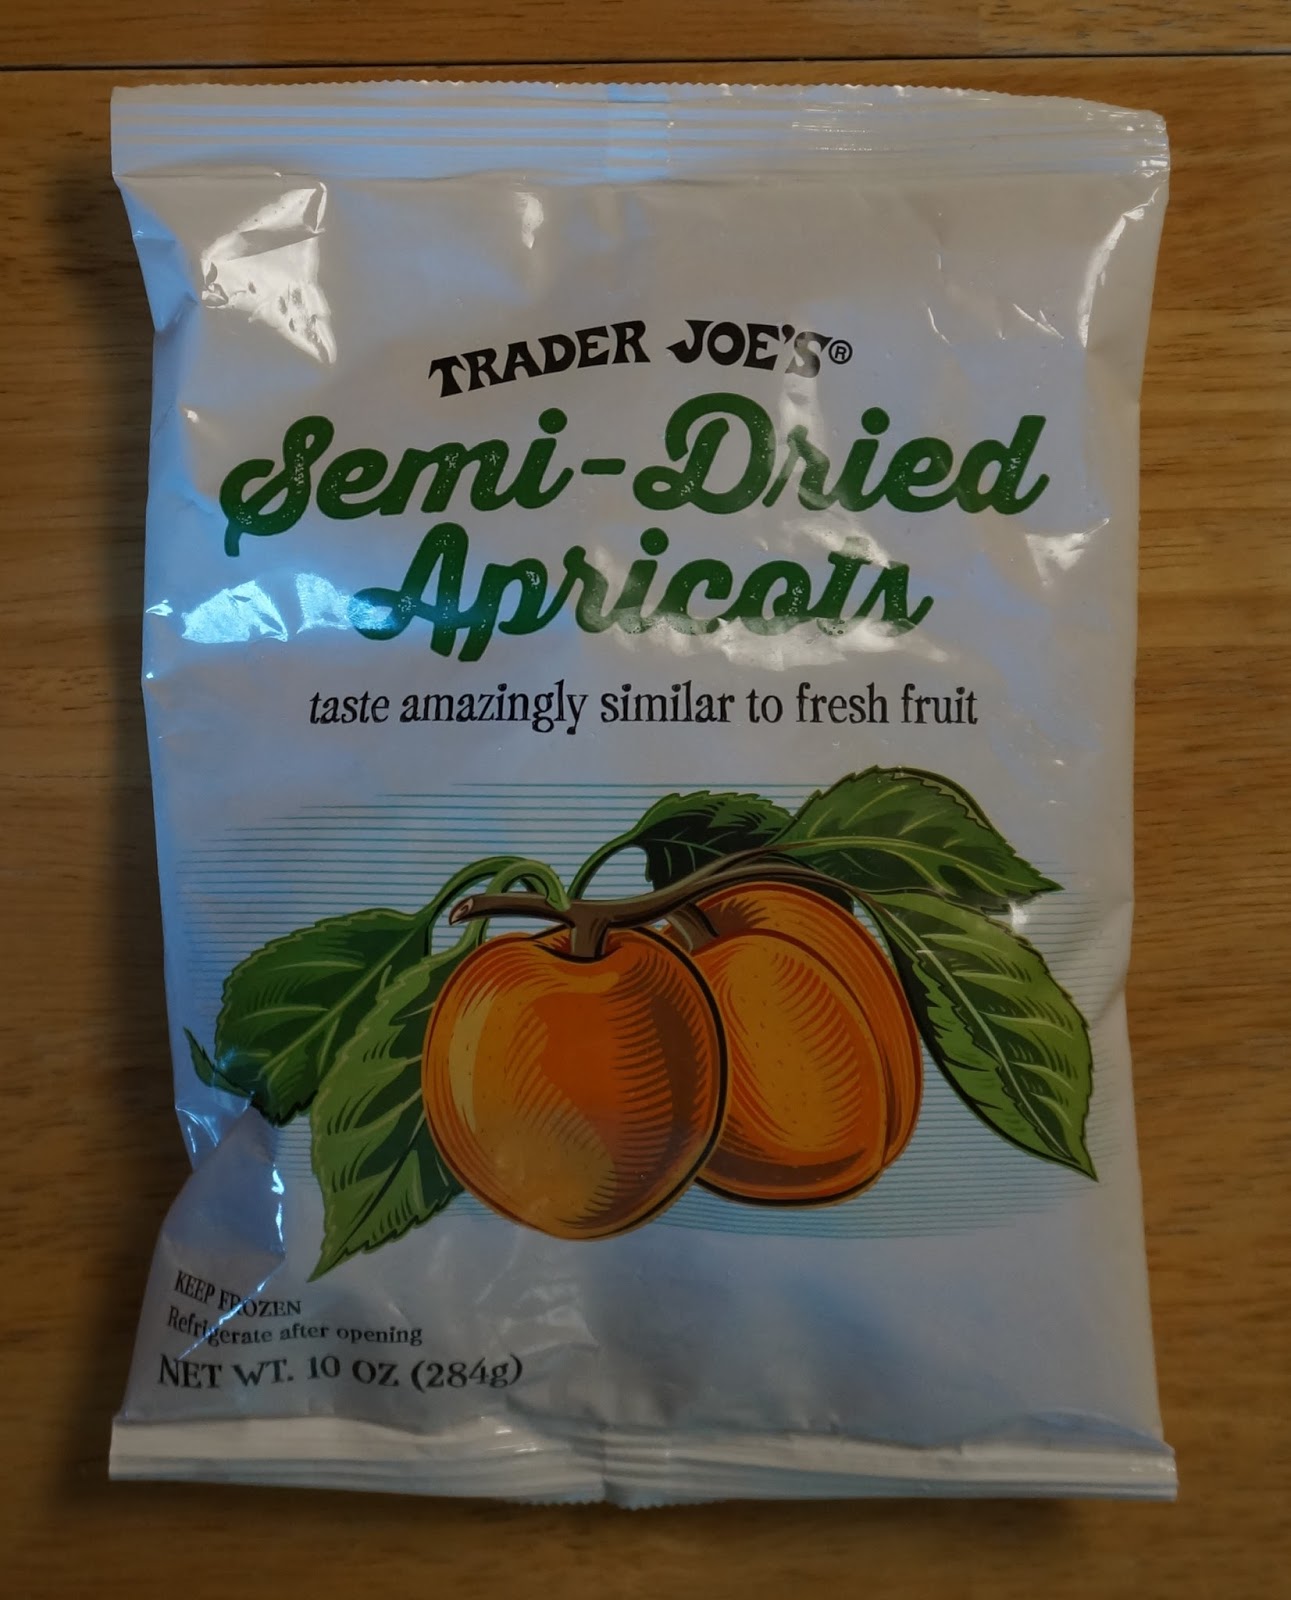 Exploring Trader Joe's: Trader Joe's Semi-Dried Apricots